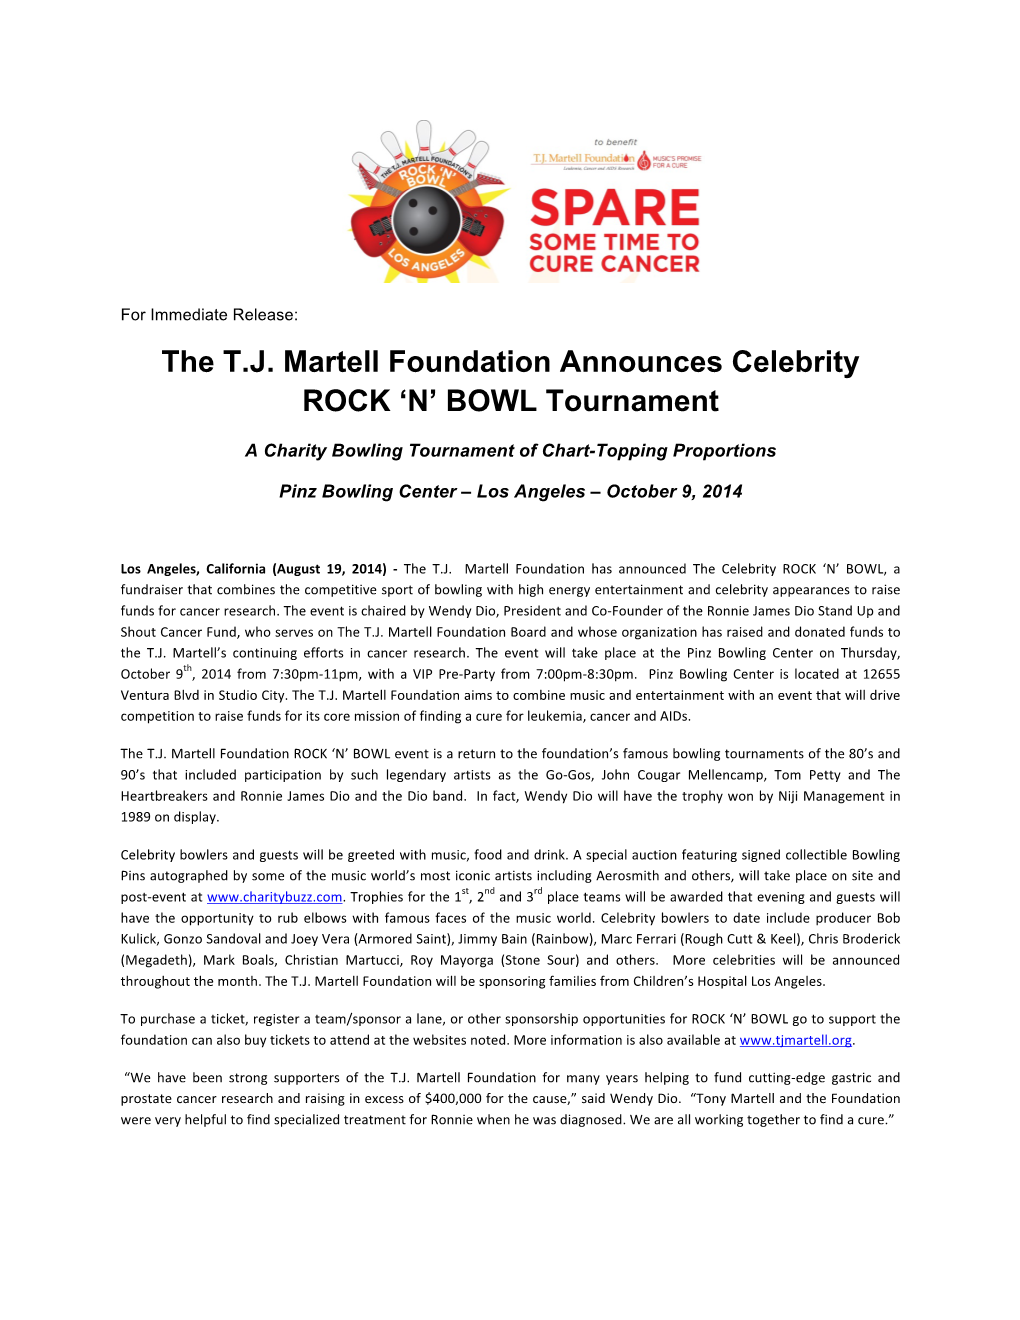 The T.J. Martell Foundation Announces Celebrity ROCK 'N' BOWL Tournament